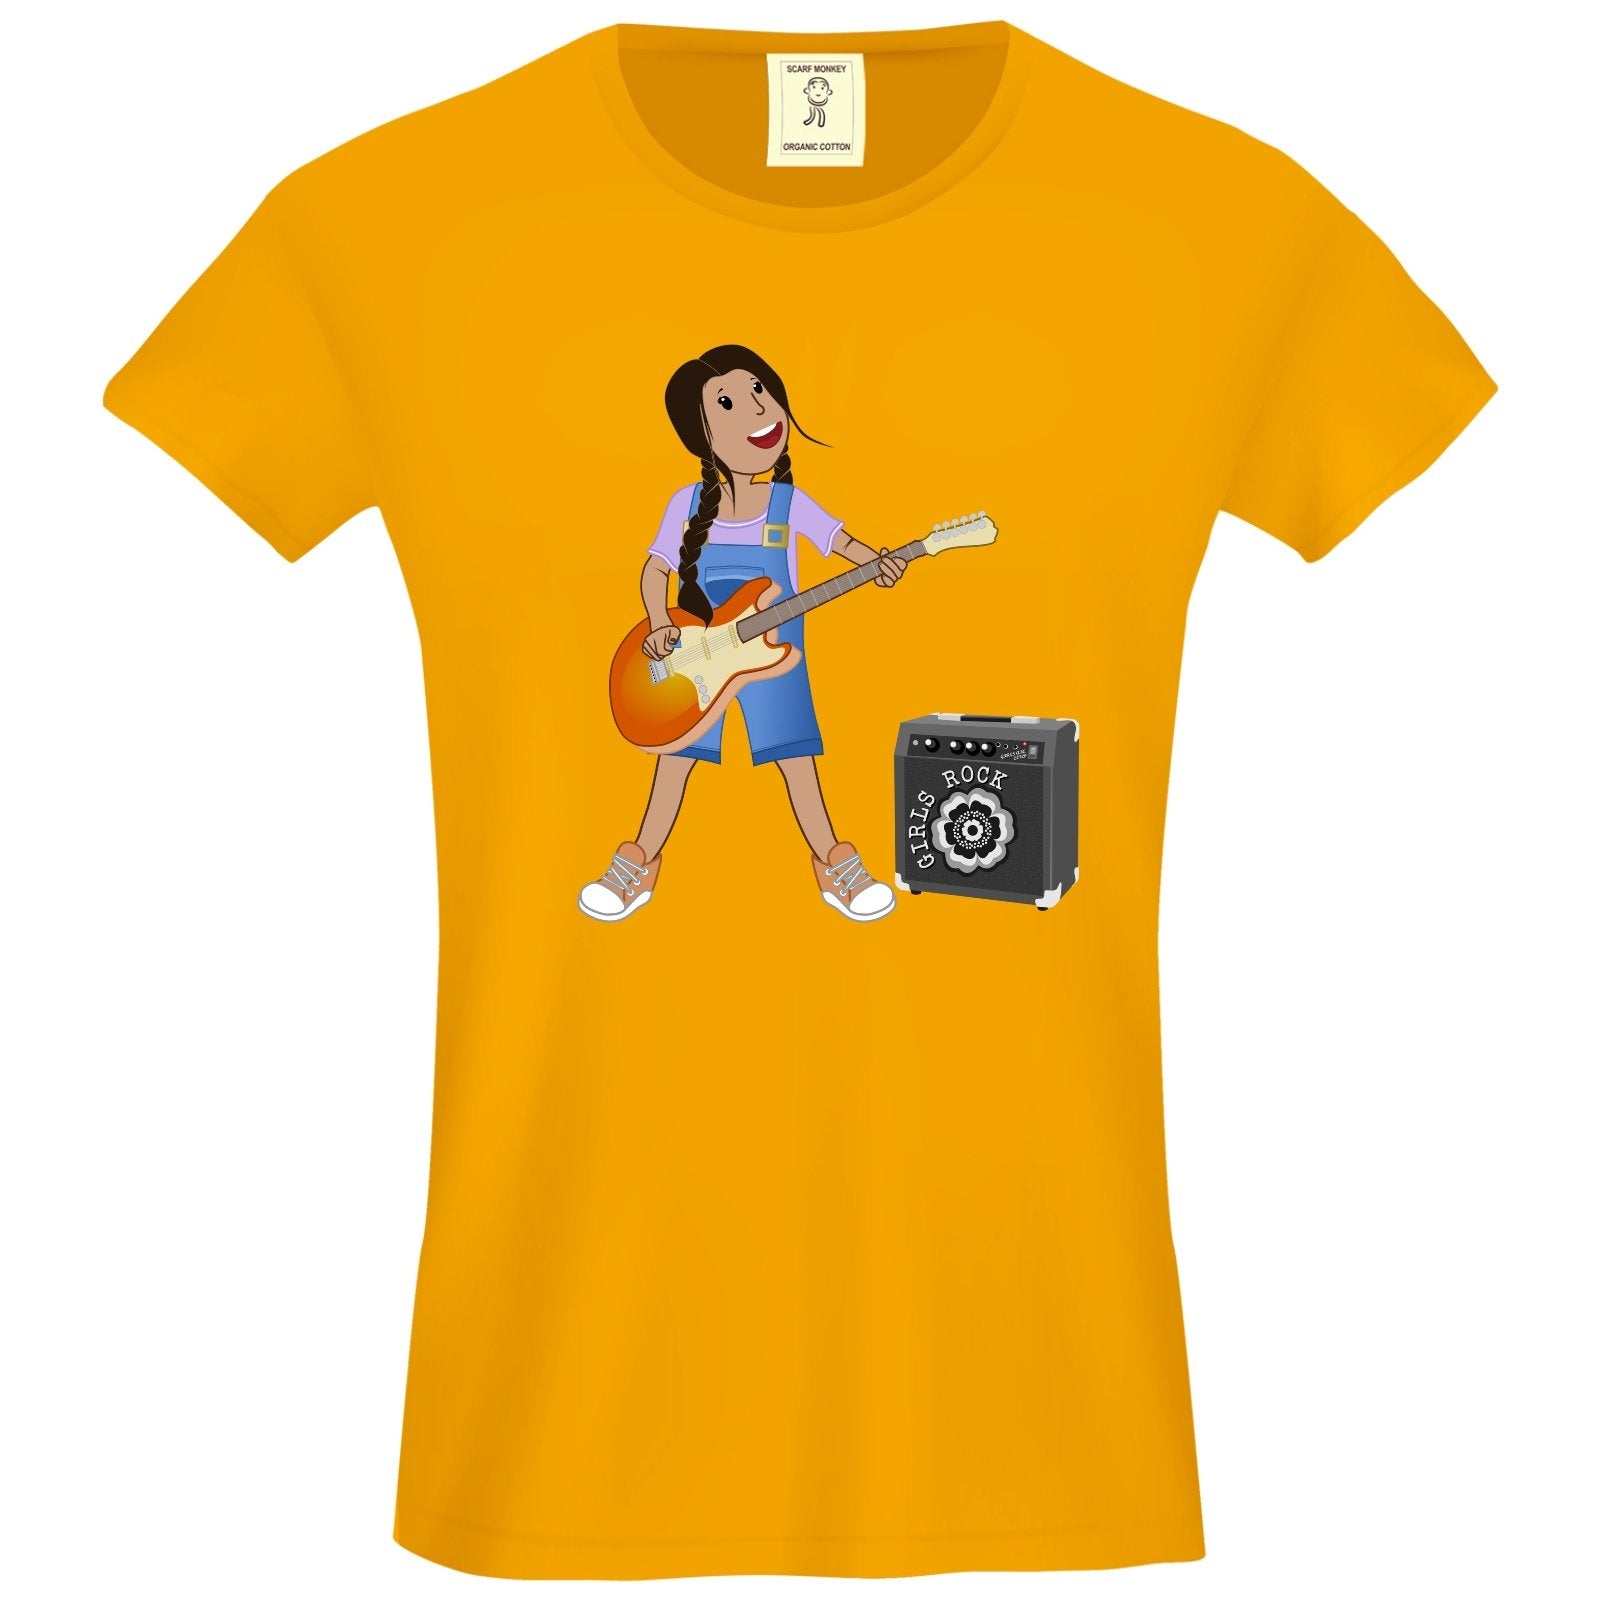 Girls Rock! Sara Organic Cotton Girls T-Shirt - Scarf Monkey